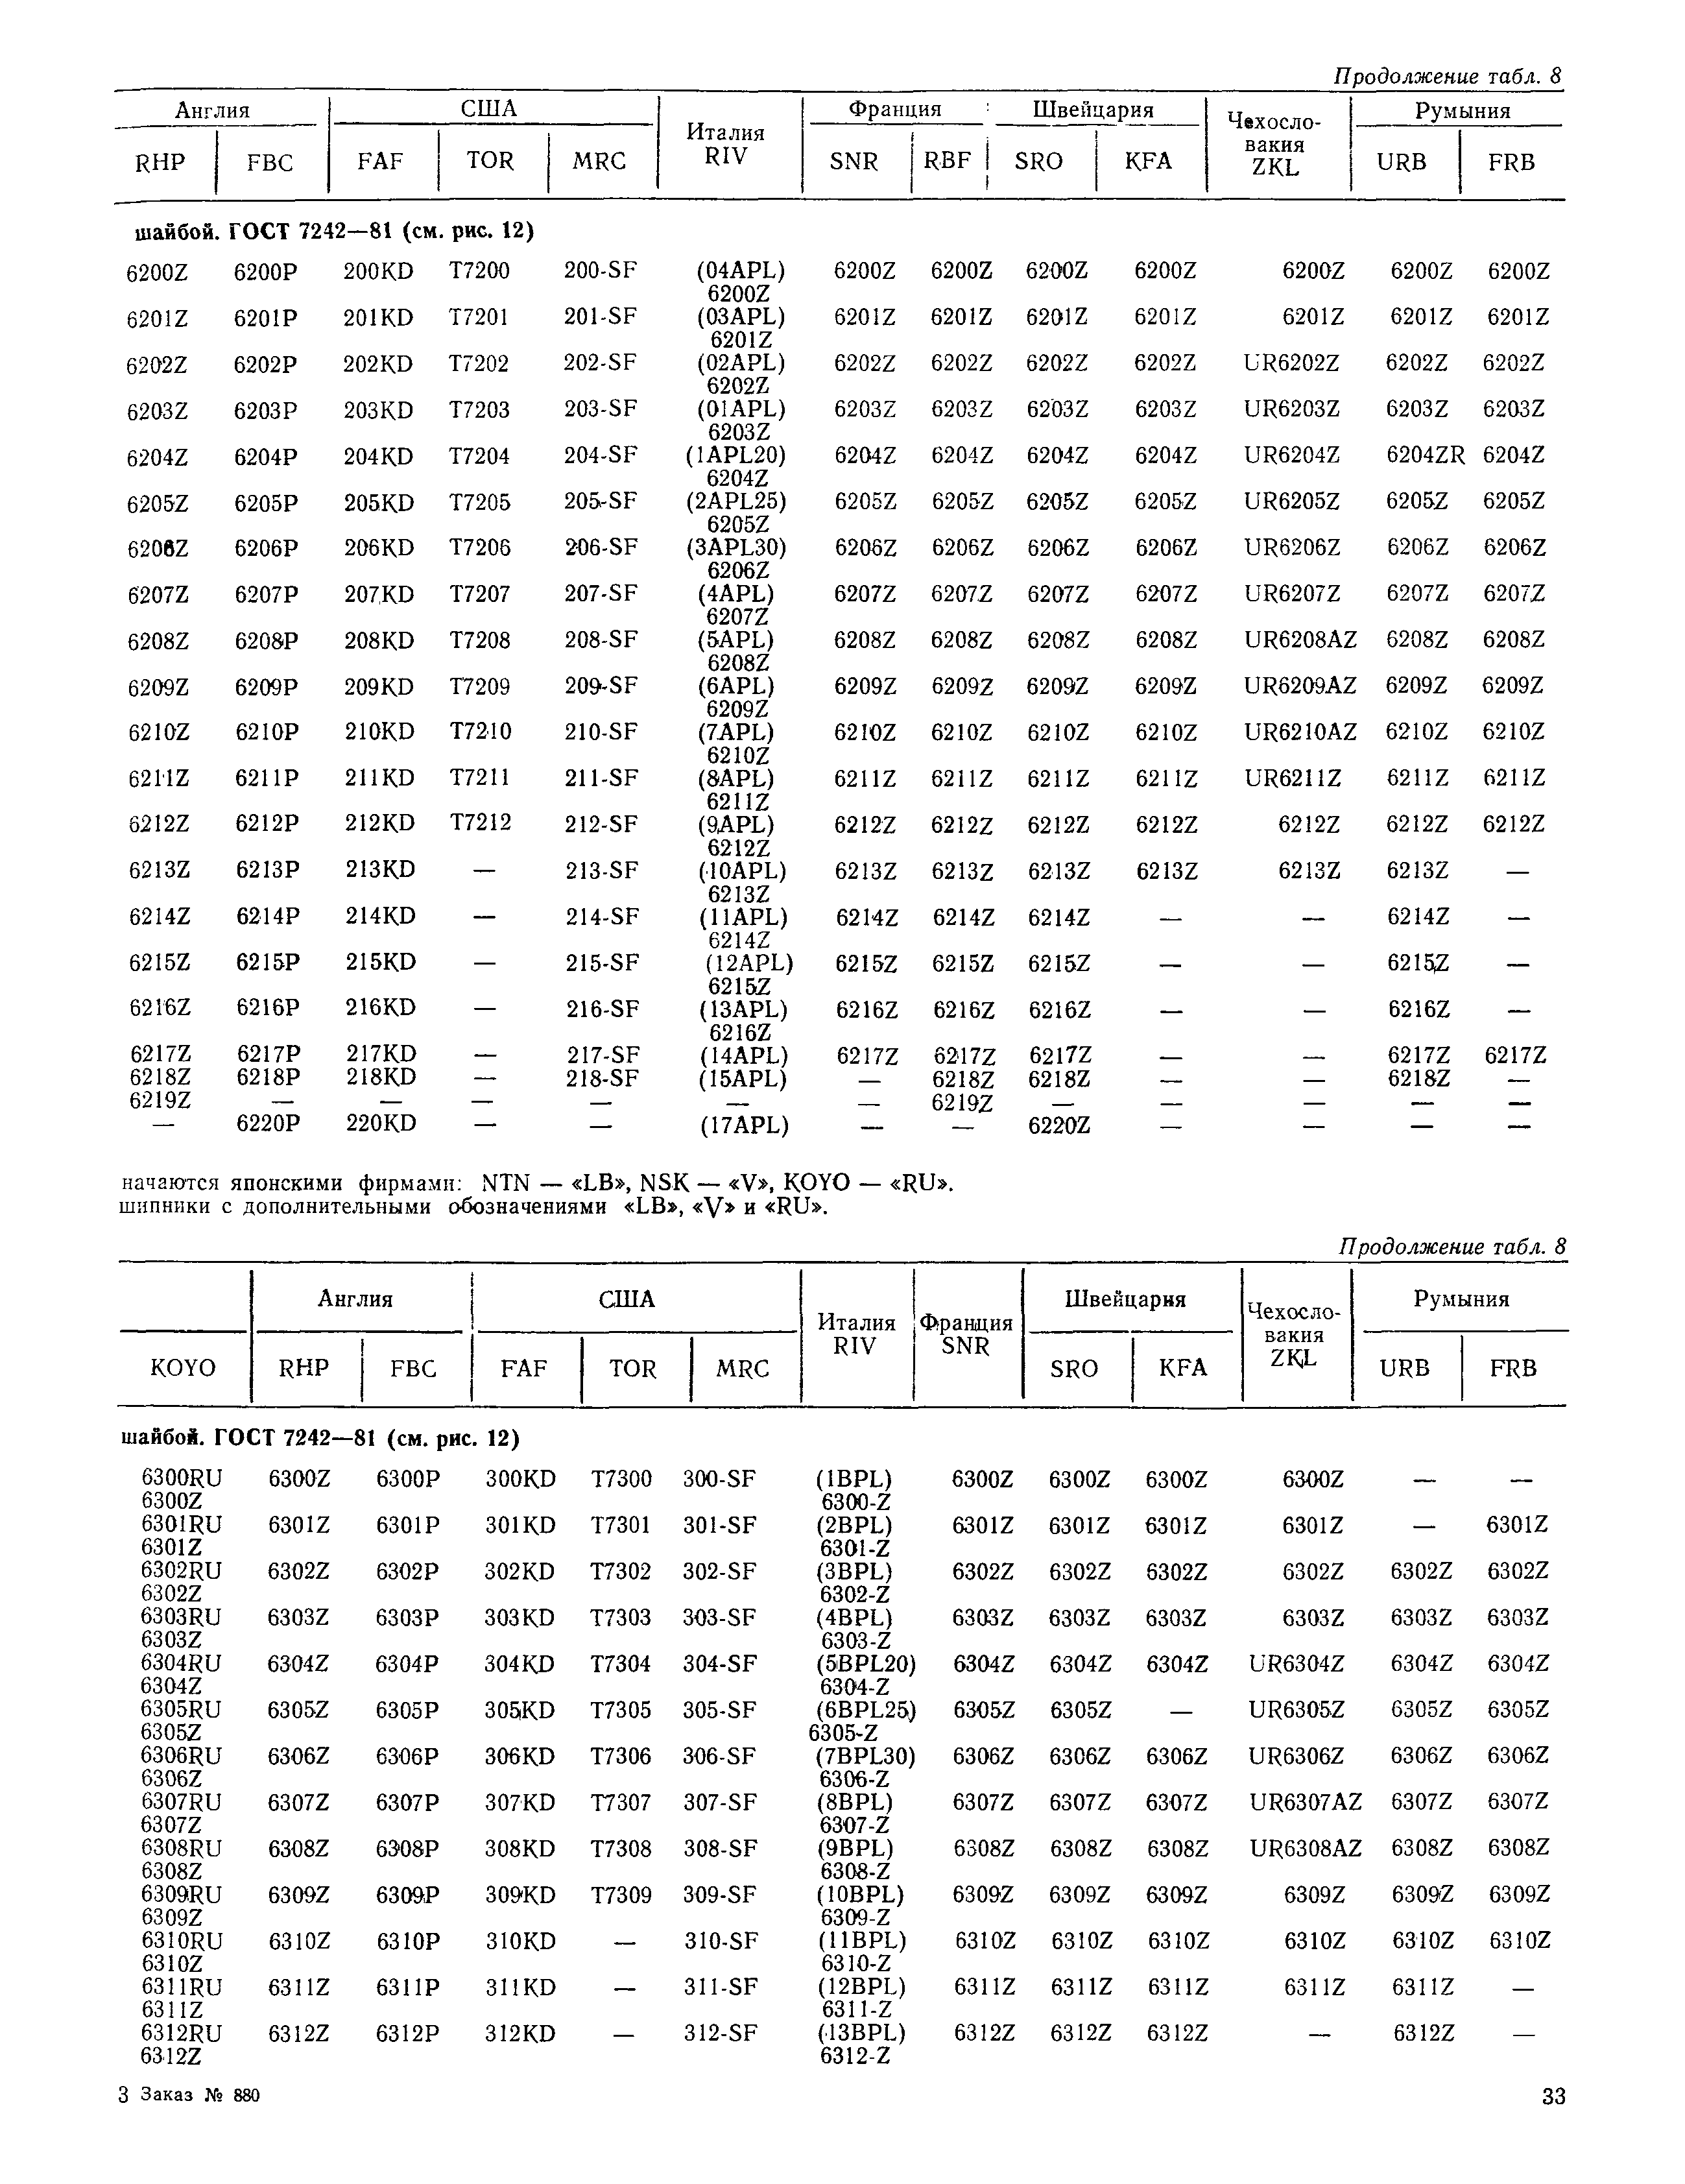 РД 31.56.01-91